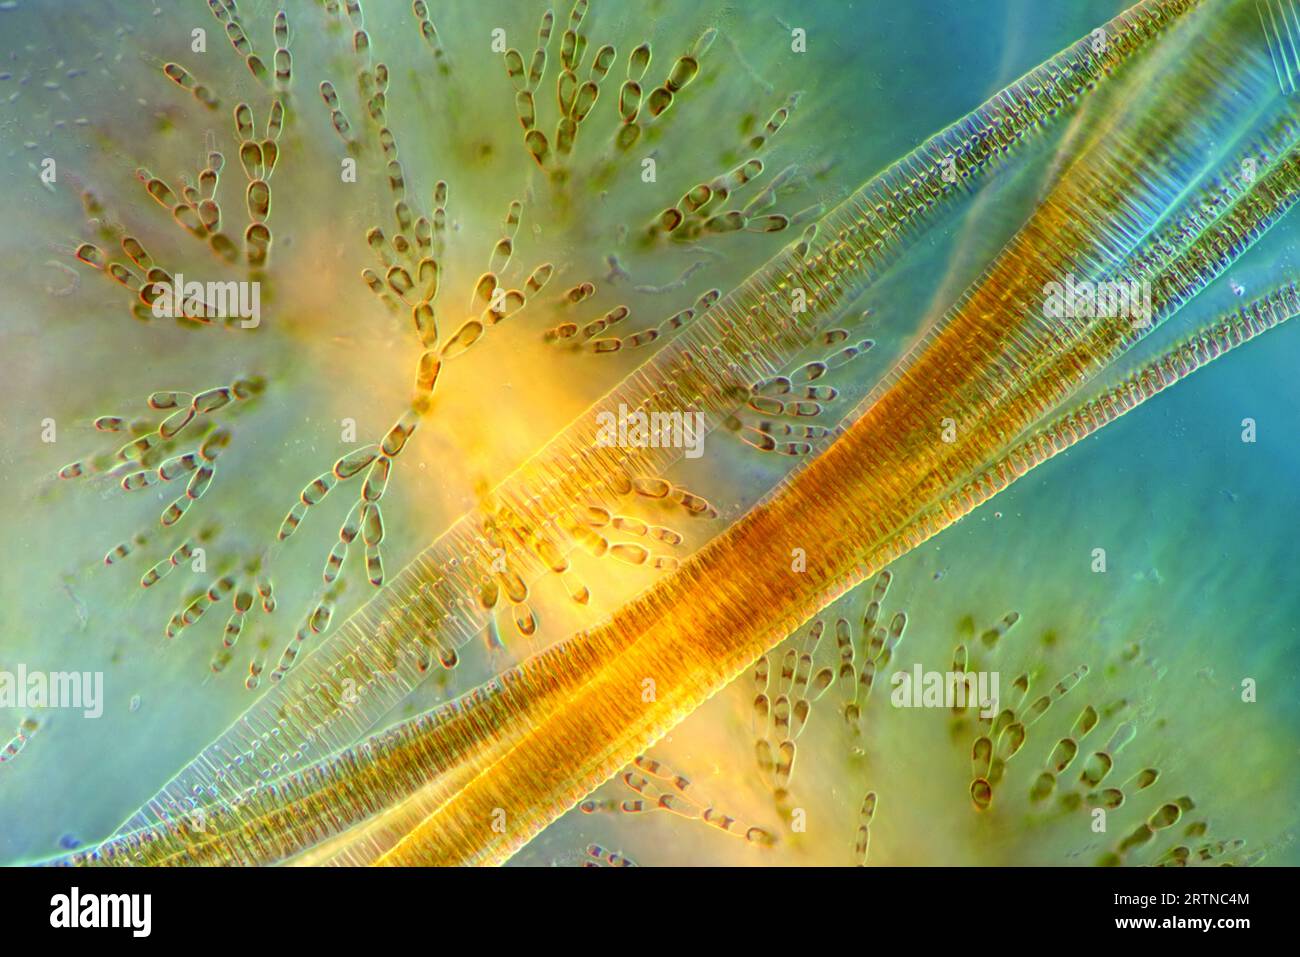 L'image présente Fragilaria sp., une sorte de diatomées contre Batrachospermum, une sorte d'algue rouge, photographiée au microscope en li polarisé Banque D'Images